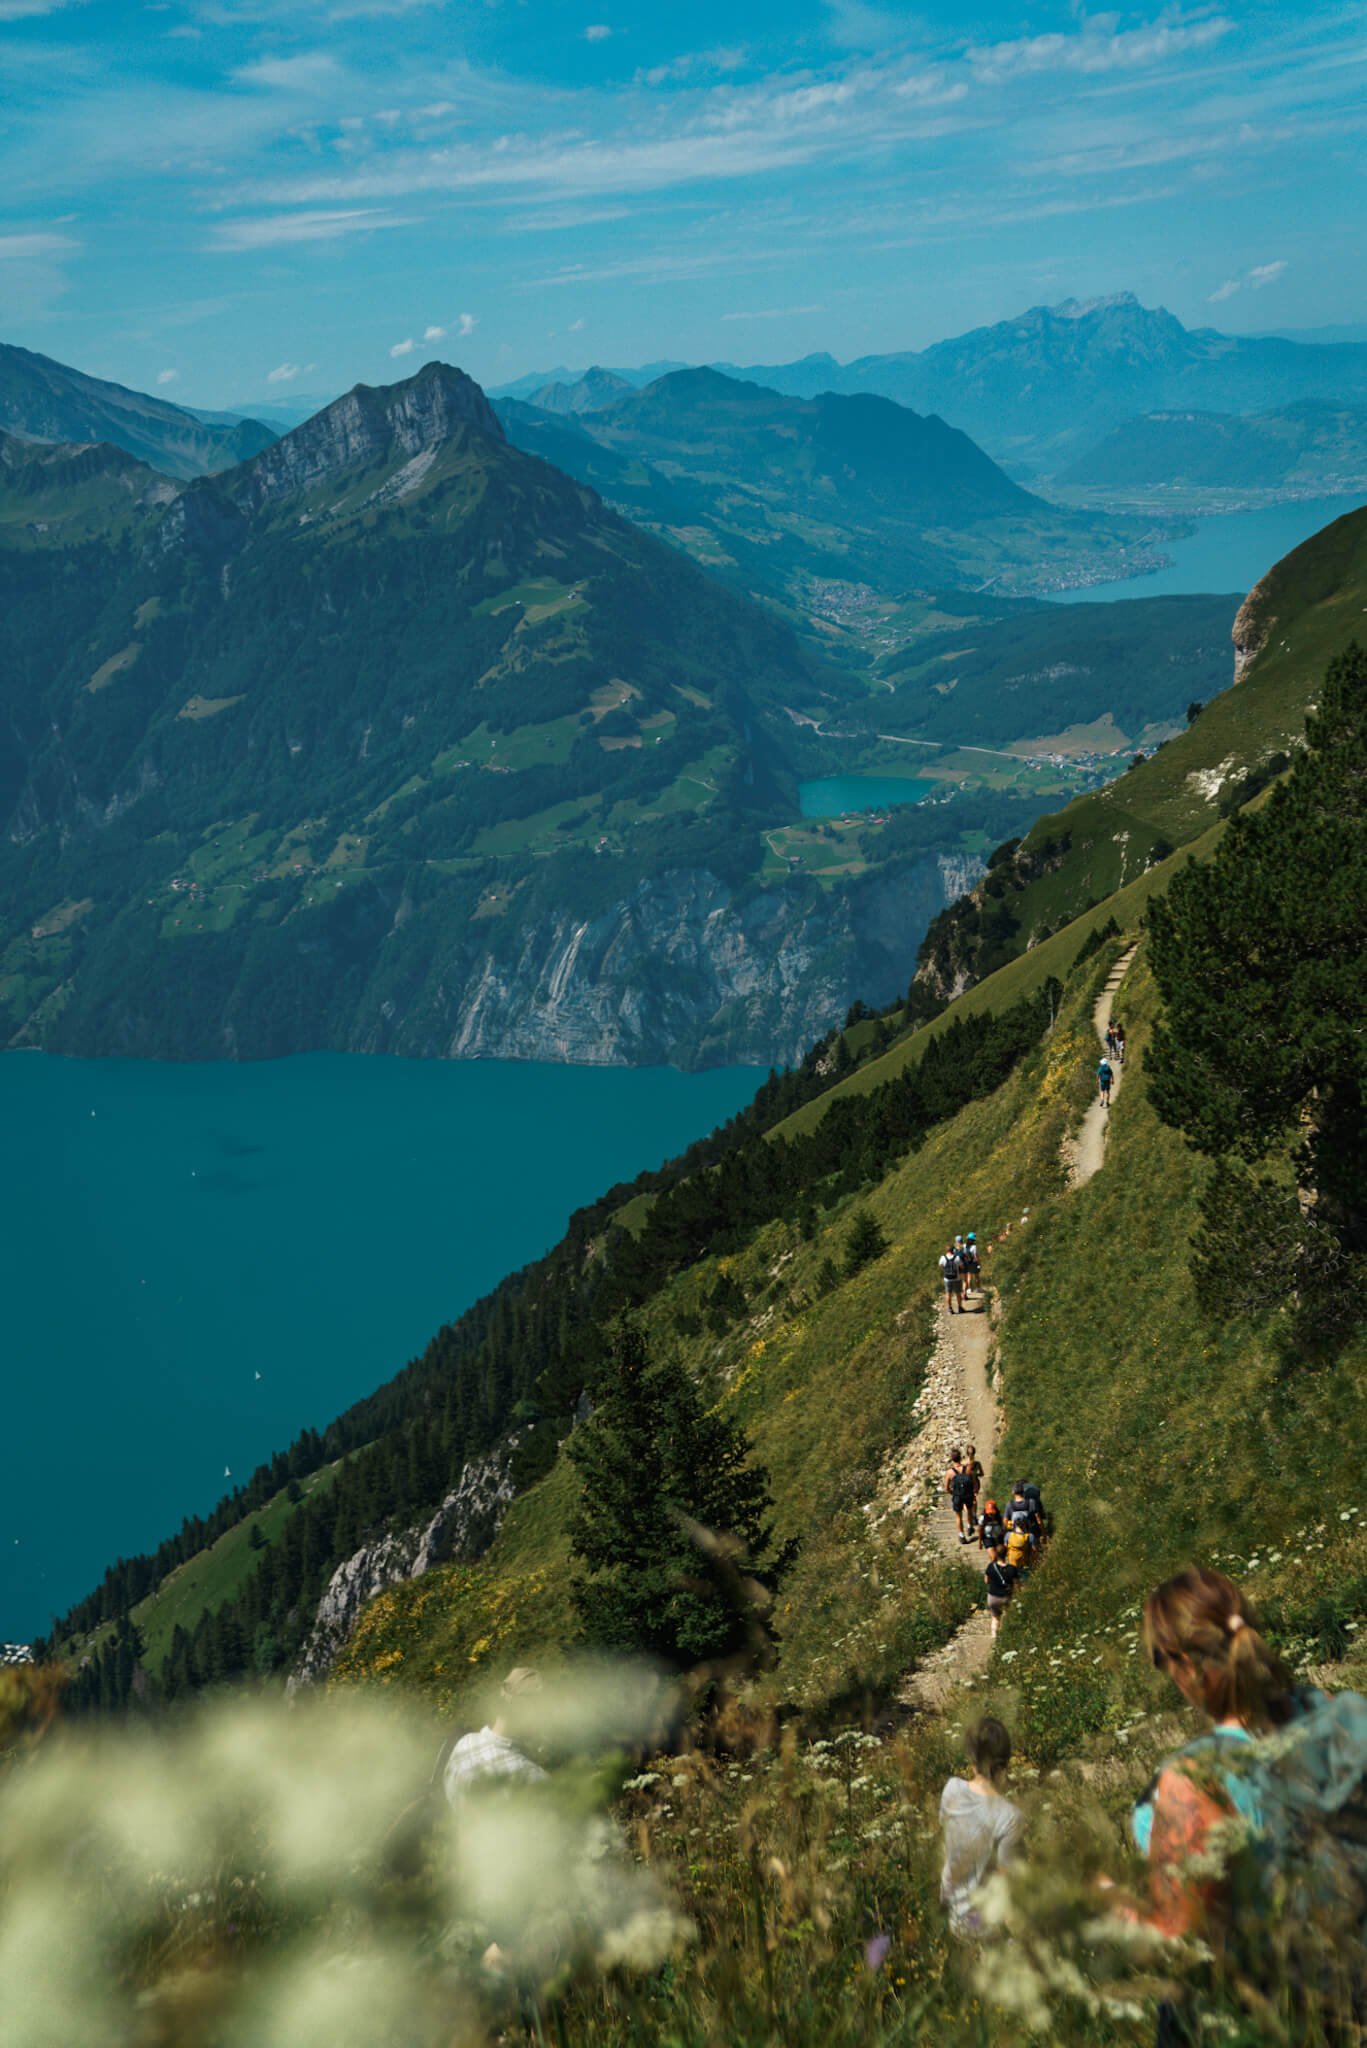 Stoos RIdge hike in Switzerland